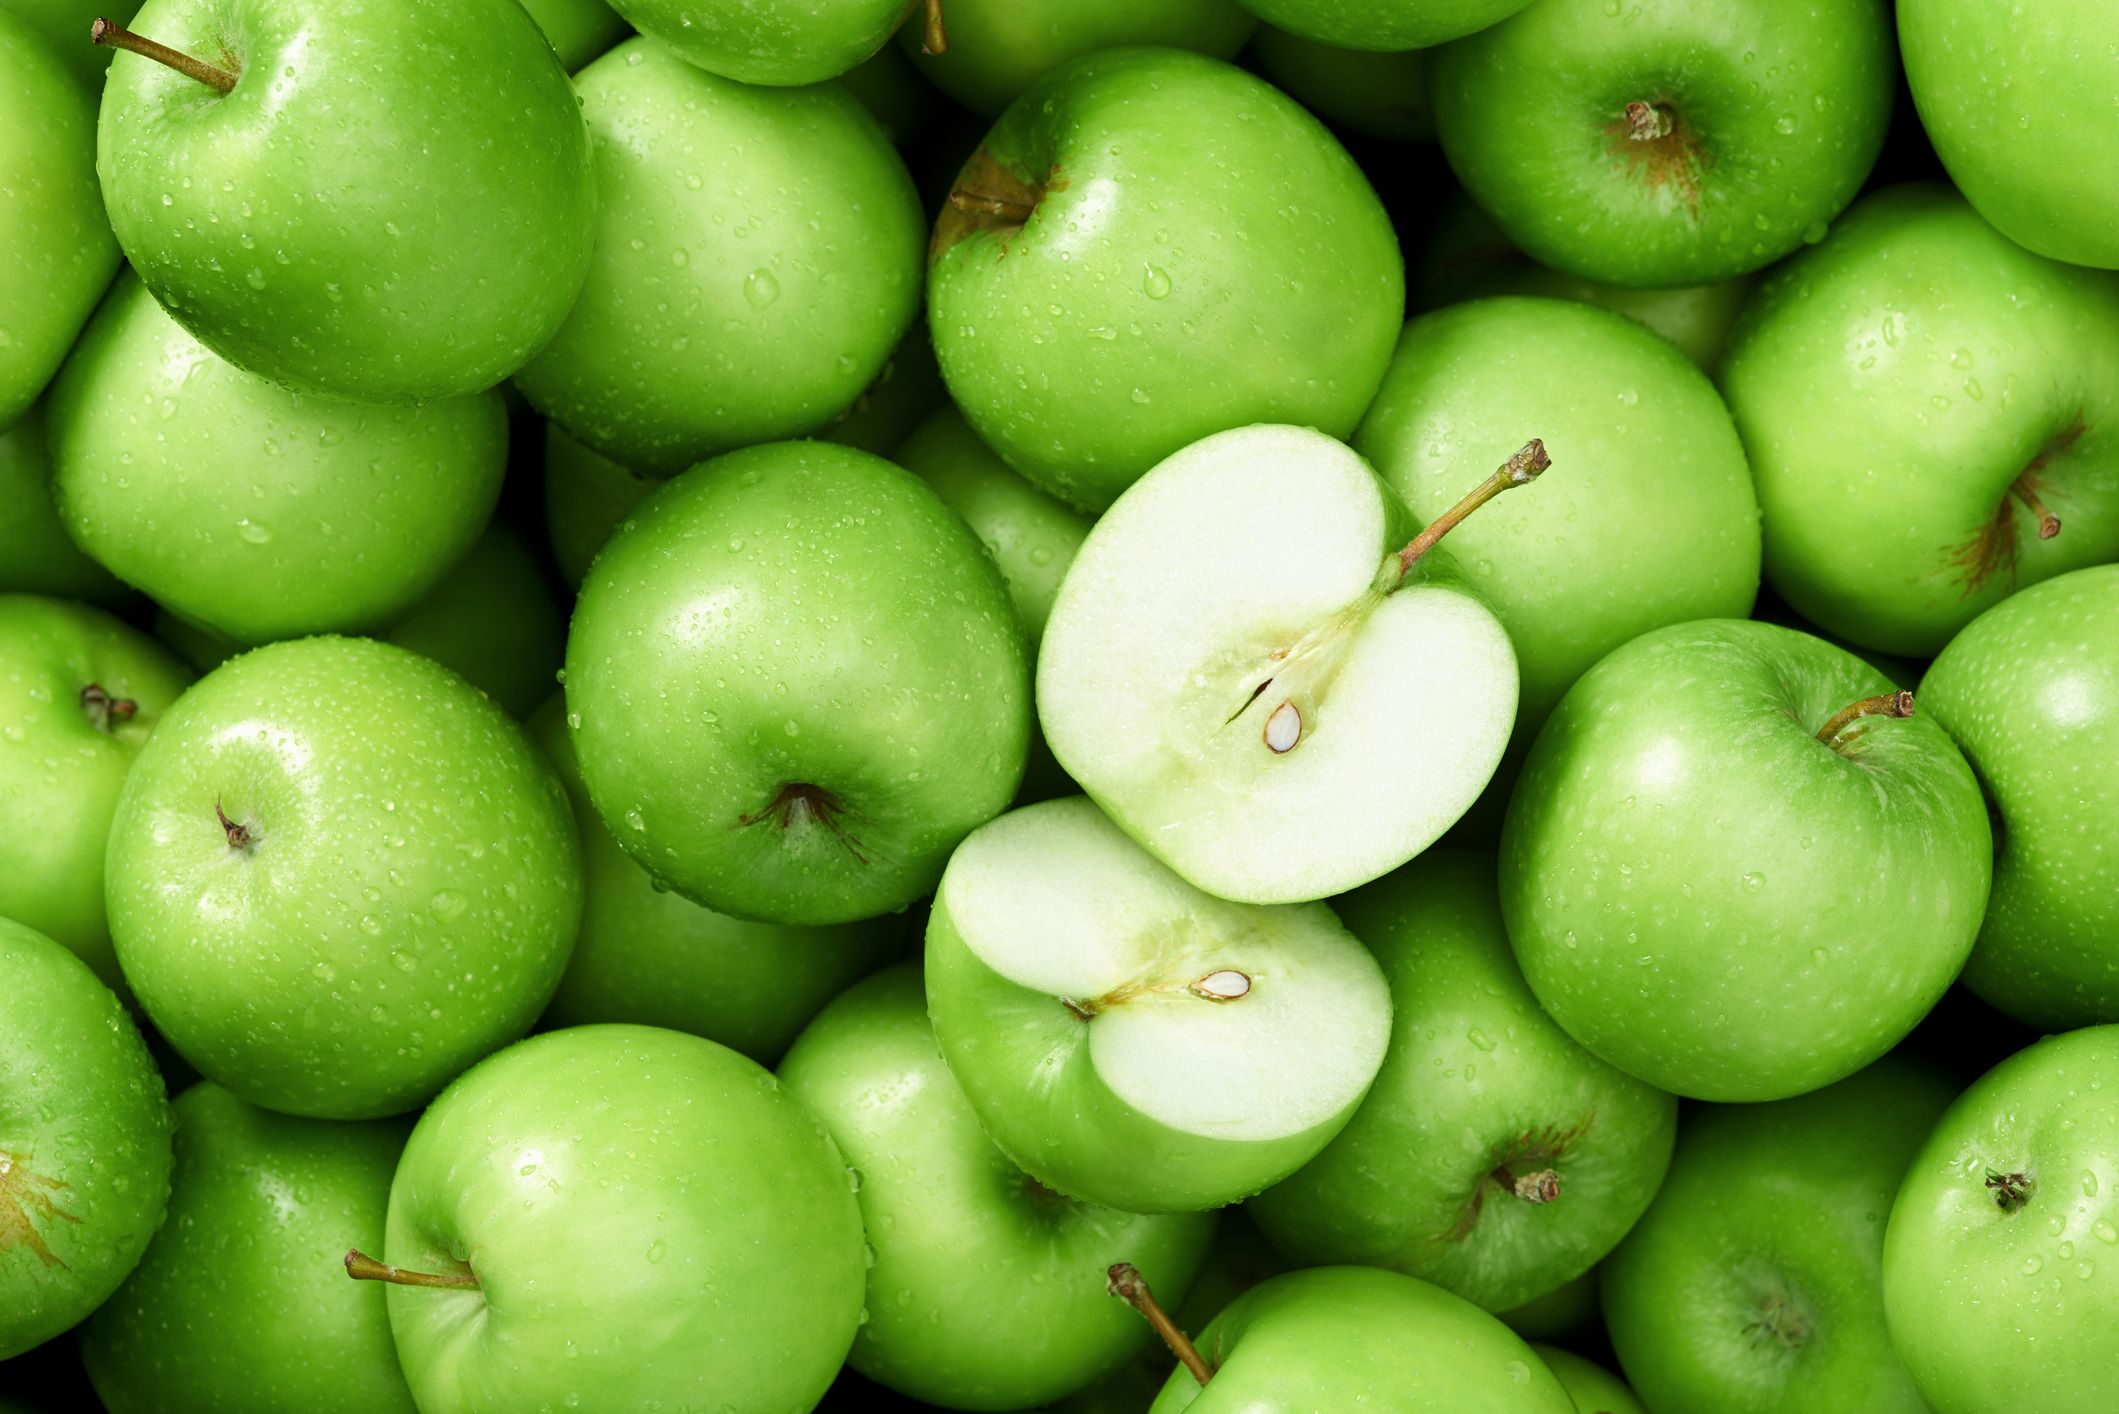 Táo: Những quả táo ngon bổ và có hương vị độc đáo chắc hẳn sẽ khiến bạn thèm thuồng. Cùng chiêm ngưỡng những hình ảnh táo cực kỳ cuốn hút tại đây! Để khám phá sắc màu, hình dáng và vị ngọt thanh của loại trái cây này.